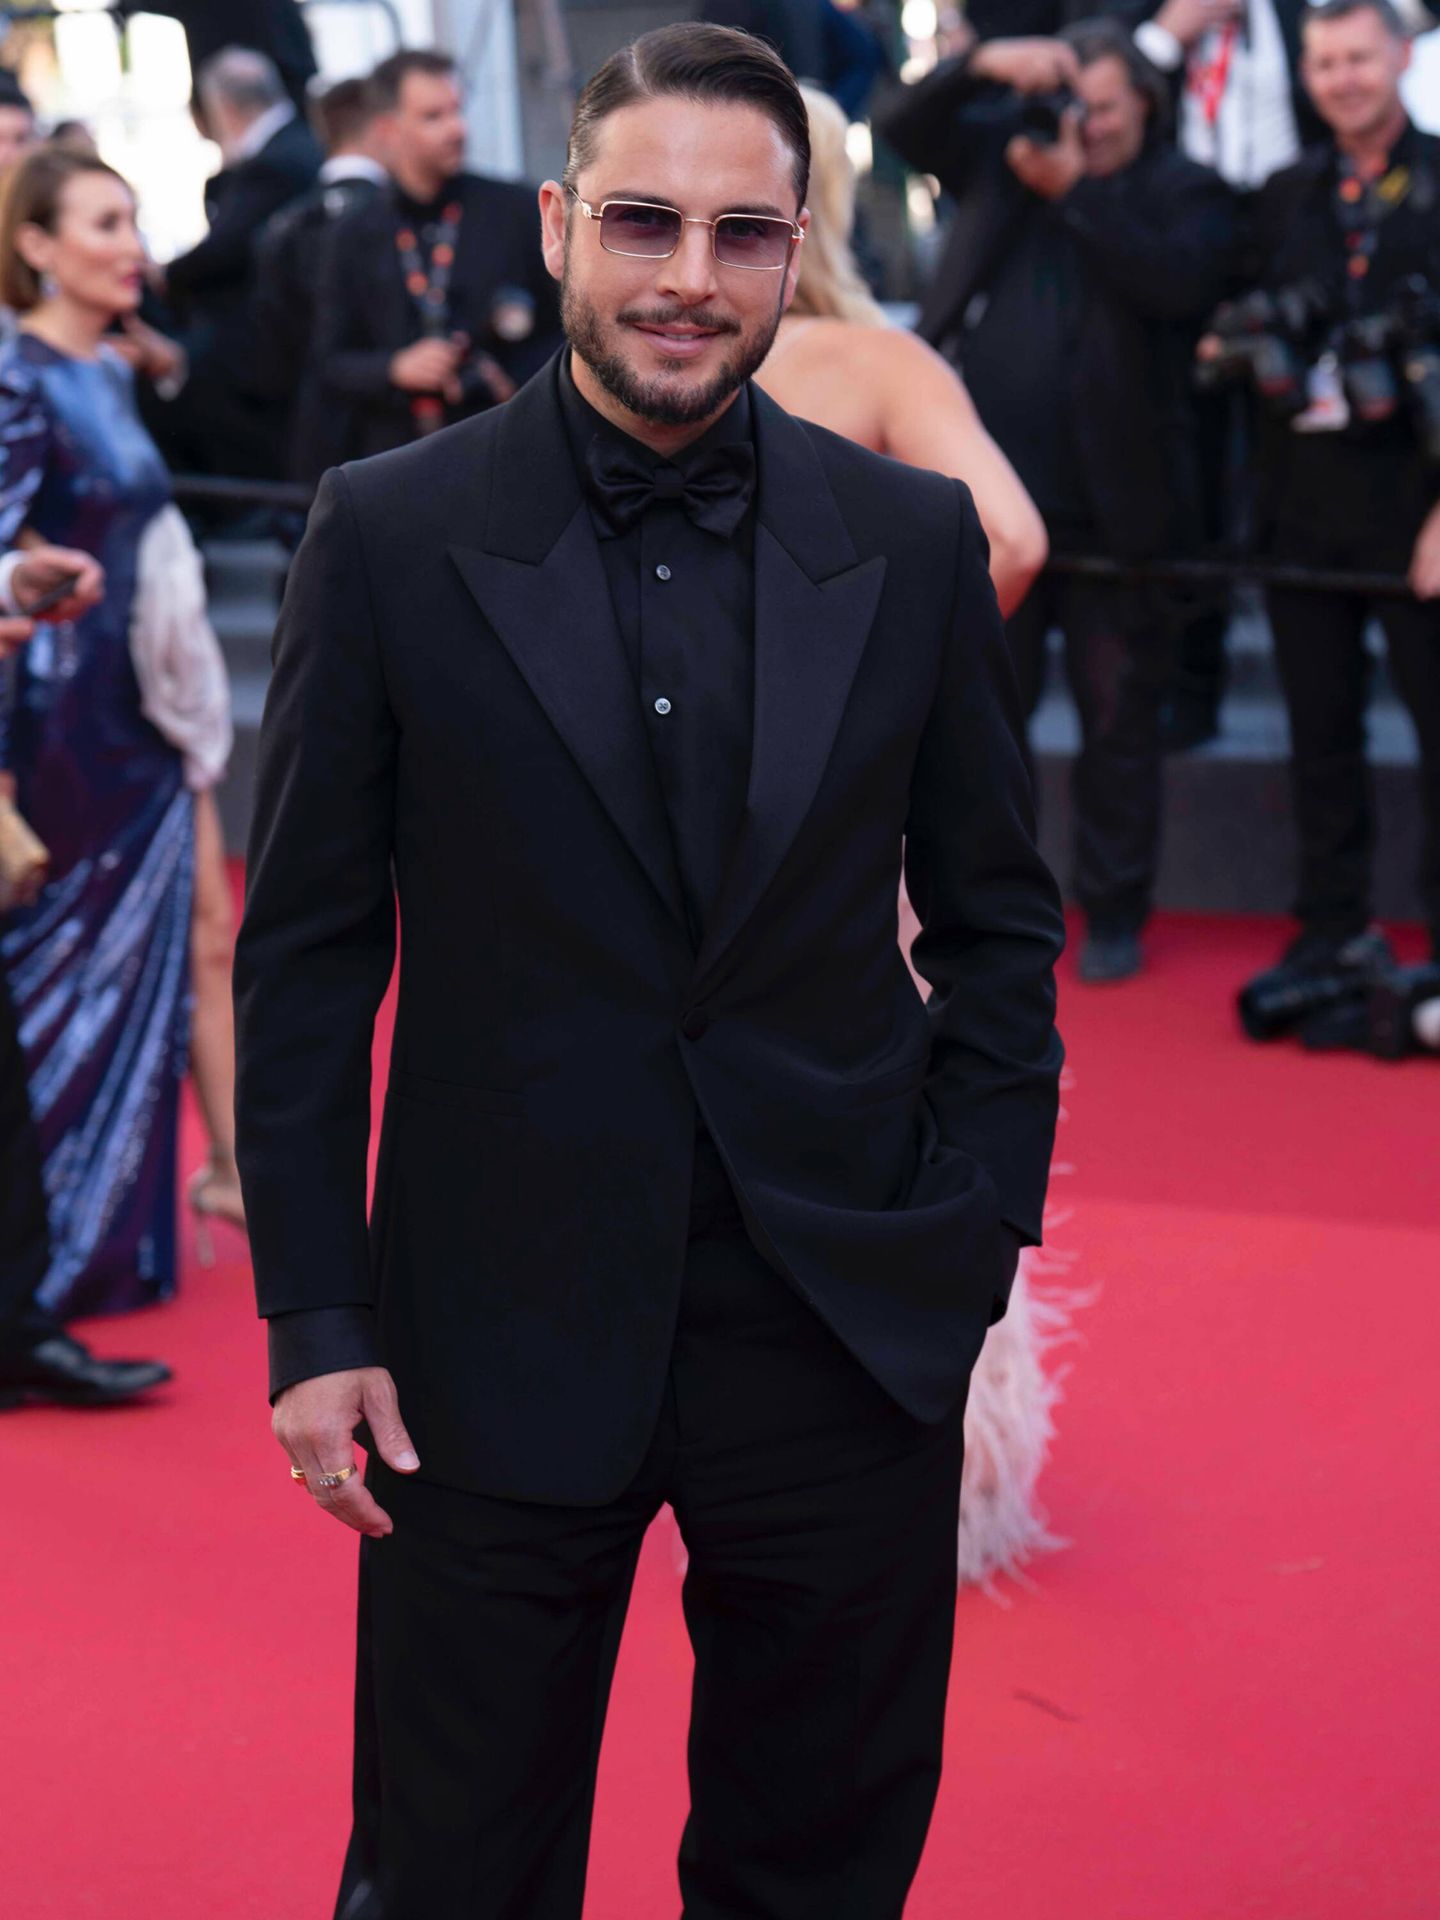 El look de Manuel Carrasco para asistir al Festival de Cine de Cannes.  (Fotografía: Diana Kopaihora)